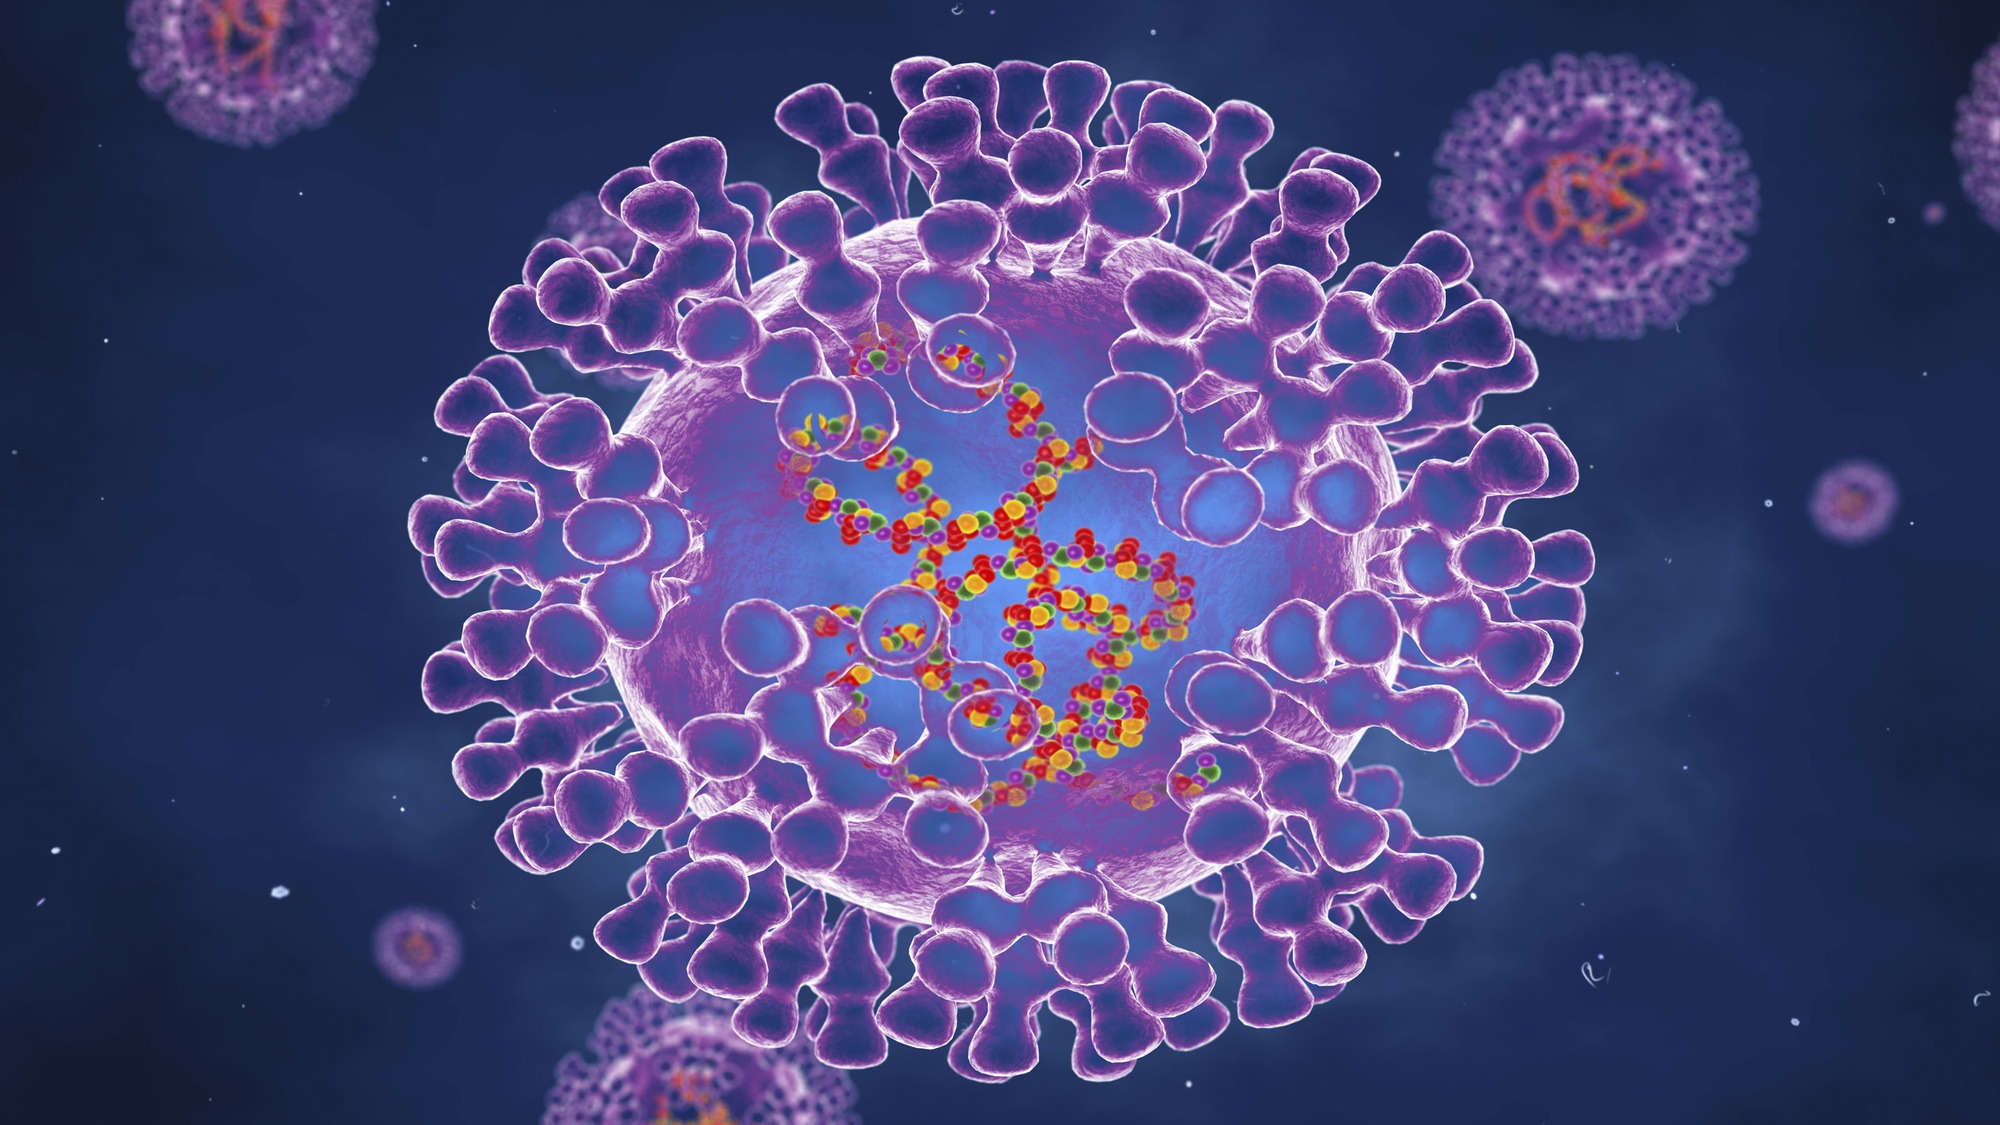 Virus MPXV là nguyên nhân gây ra bệnh đậu mùa khỉ. Hãy xem hình ảnh liên quan đến chủ đề để tìm hiểu về loại virus này và cách phòng ngừa hiệu quả để bảo vệ sức khỏe của bạn.